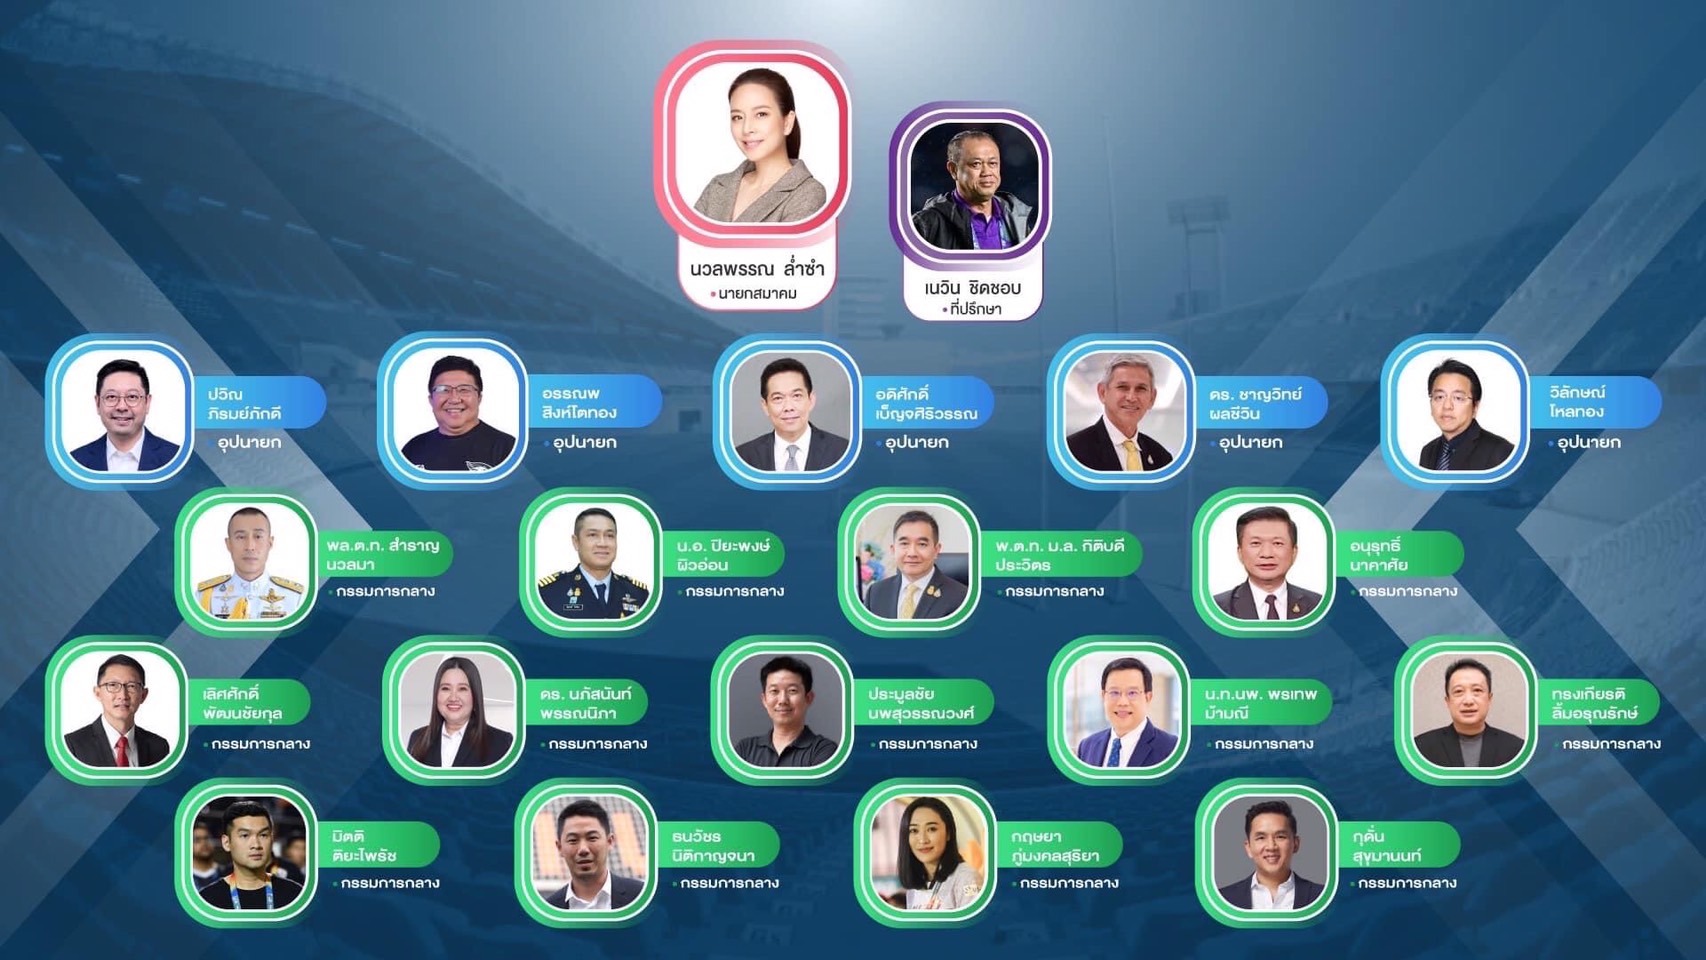  “มาดามแป้ง“ เปิดตัวทีมสภากรรมการ ชิงนายกบอลไทย-ชูสโลแกน Better Together : Team Thailand